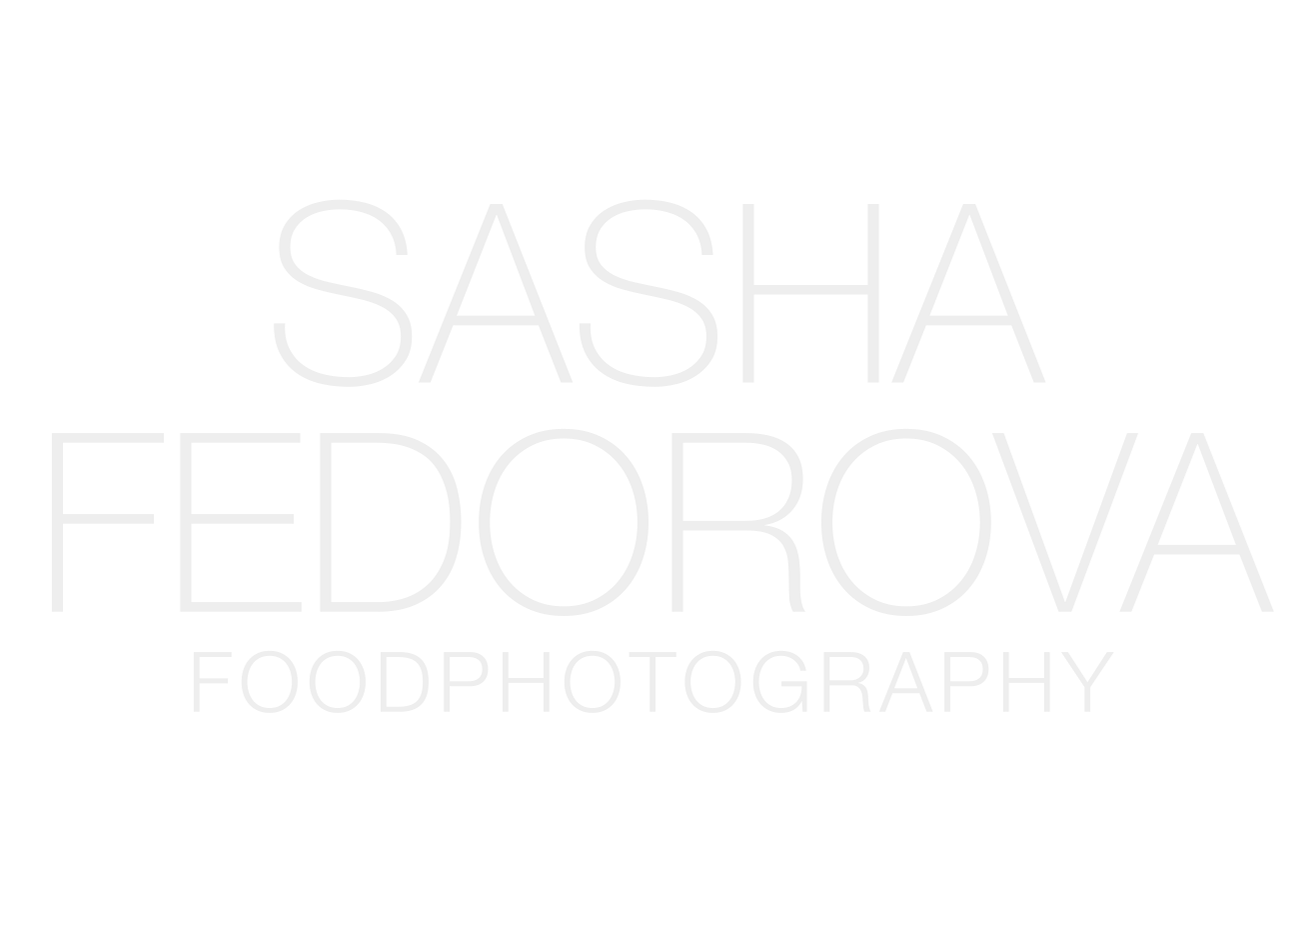 Sasha Fedorova